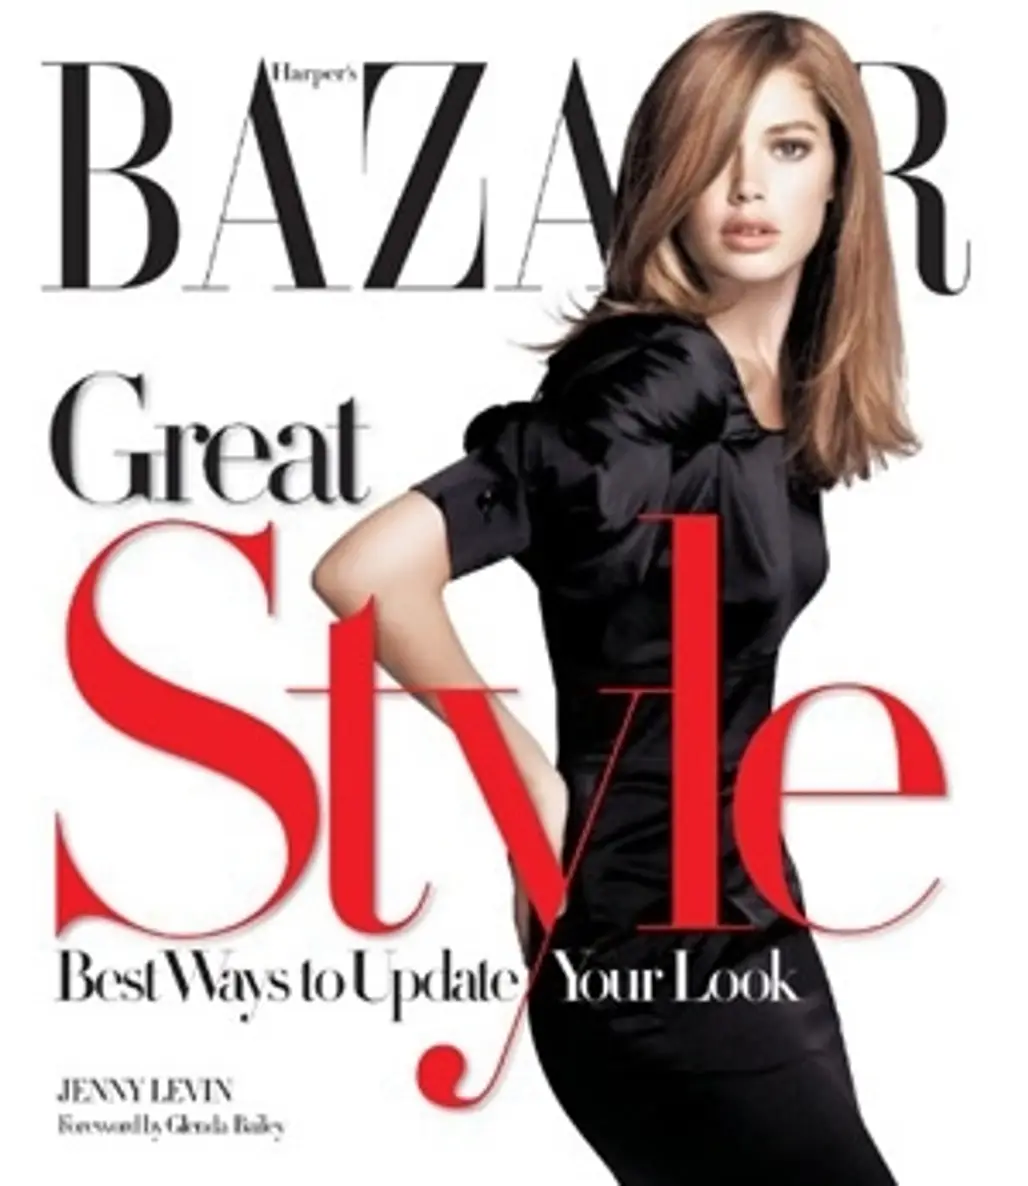 Harper’s Bazaar Great Style by Jenny Levin